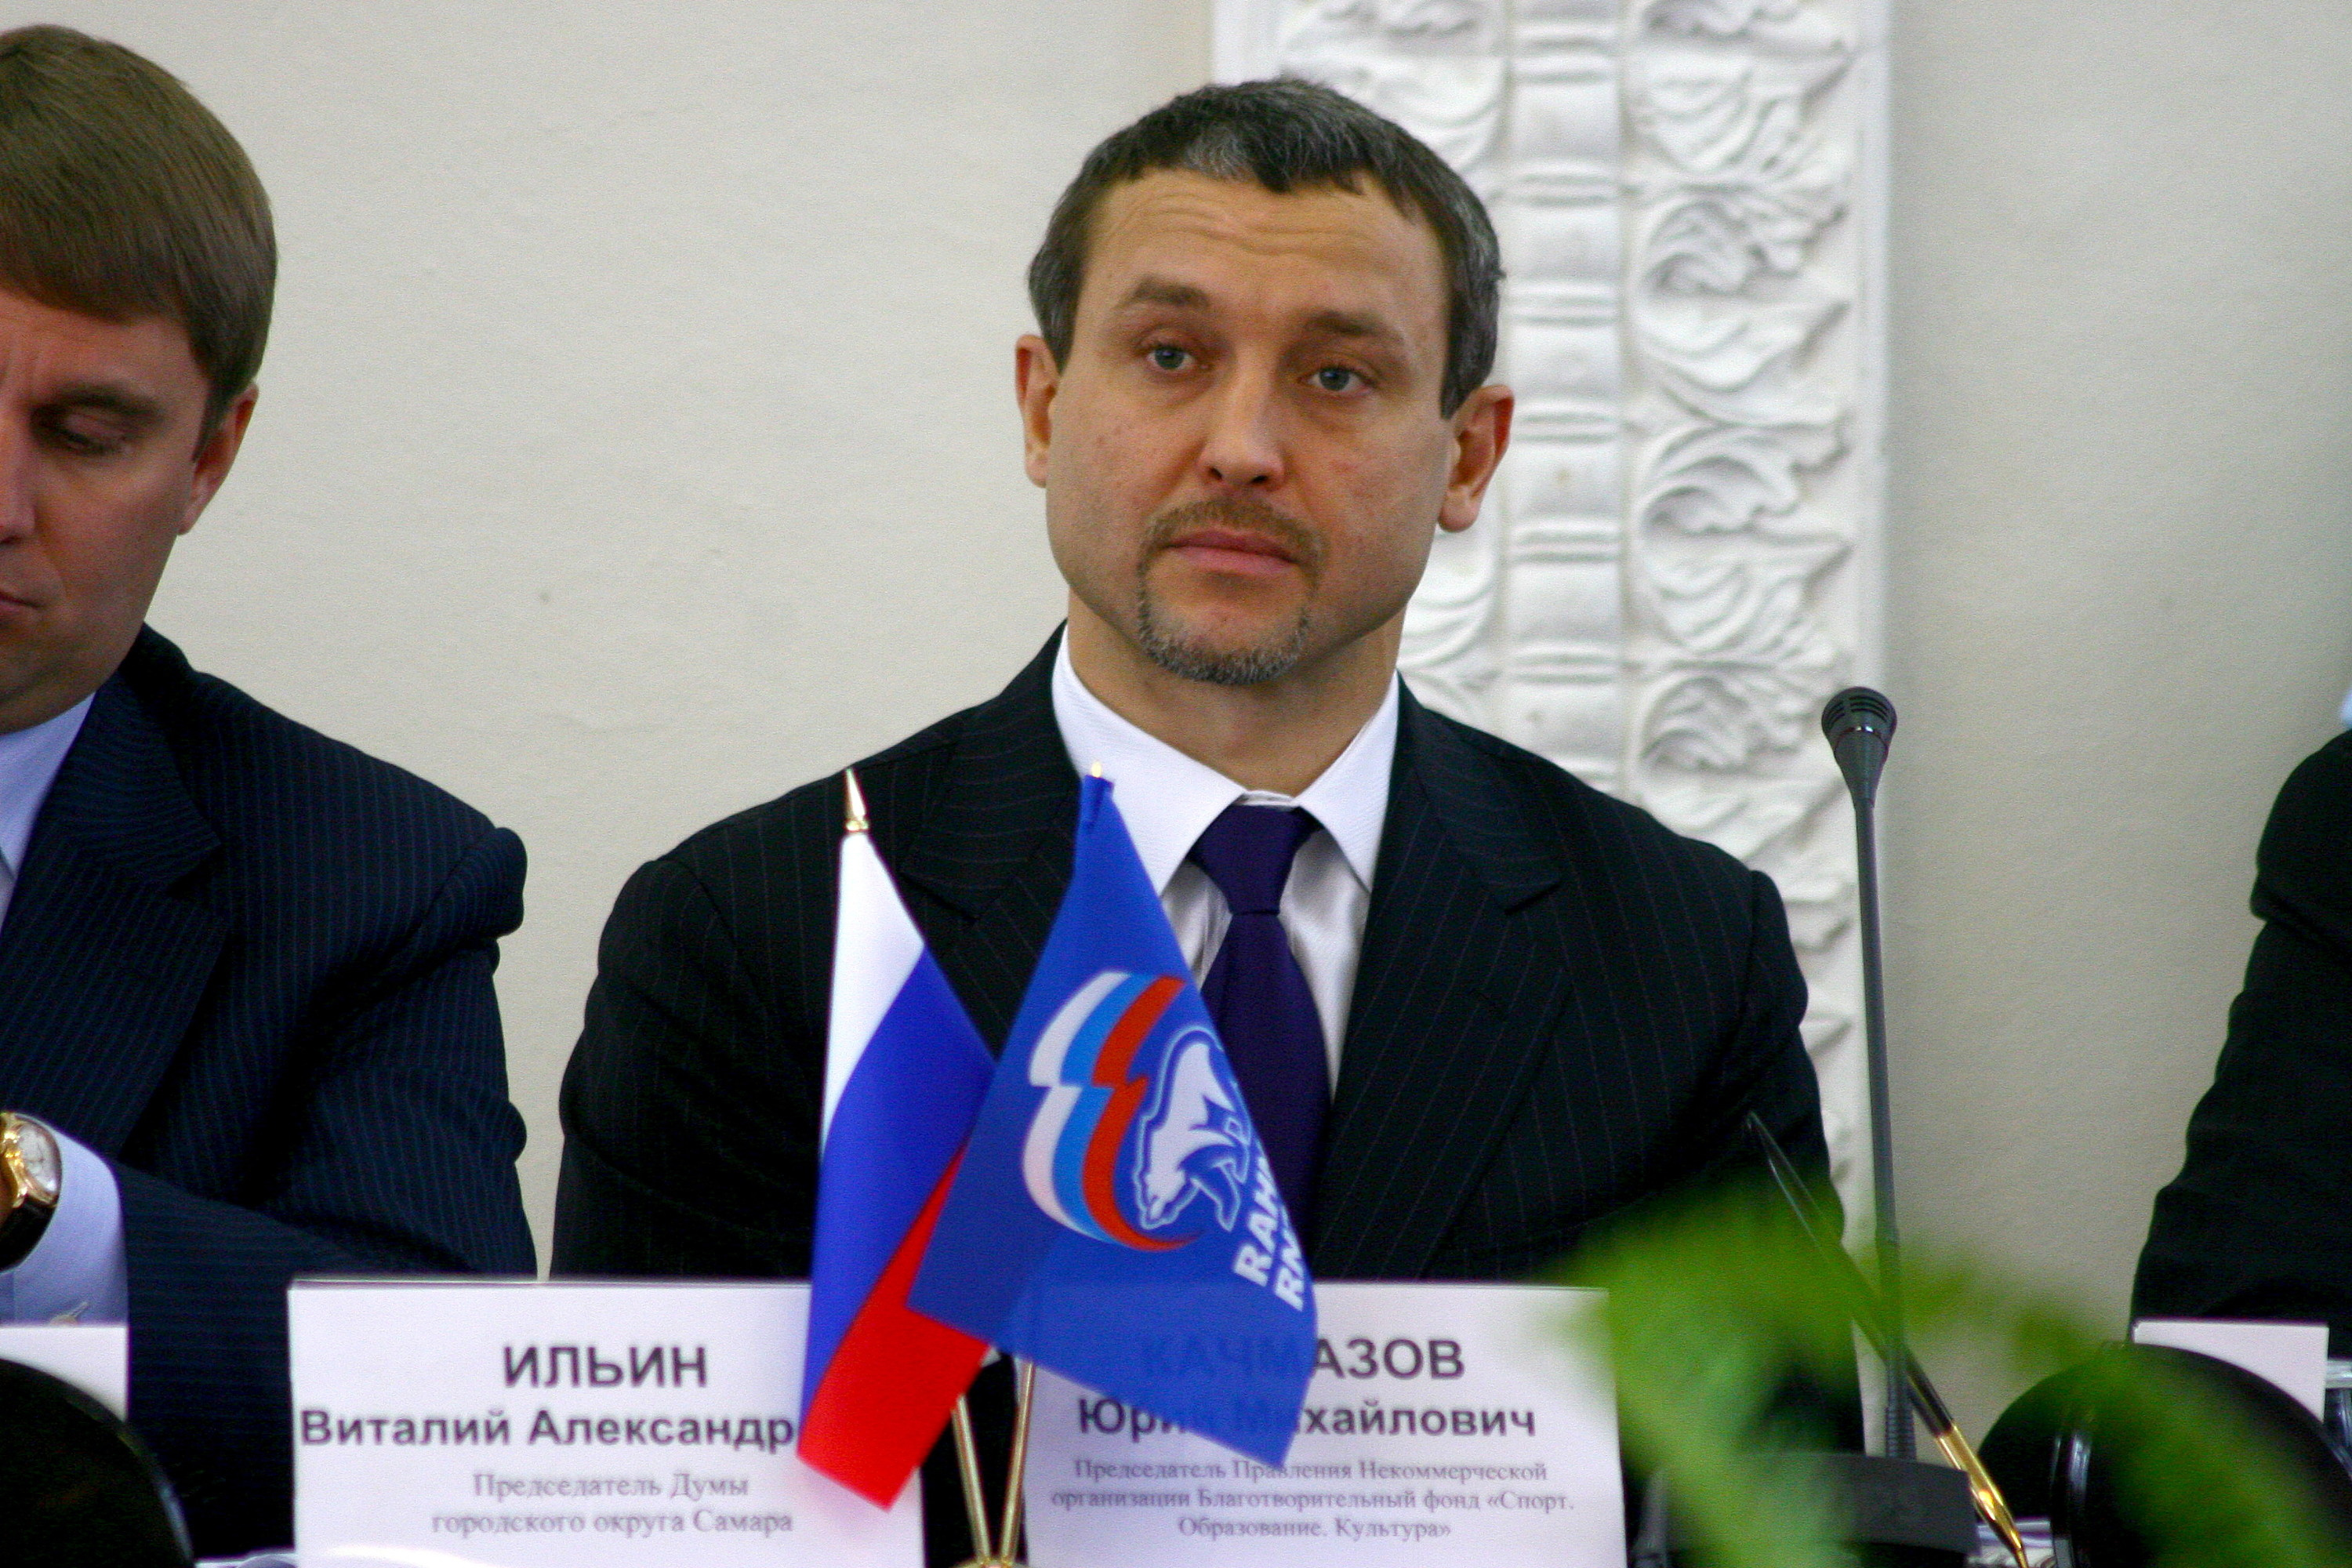 Юрий Качмазов оказывал серьезное влияние на регион